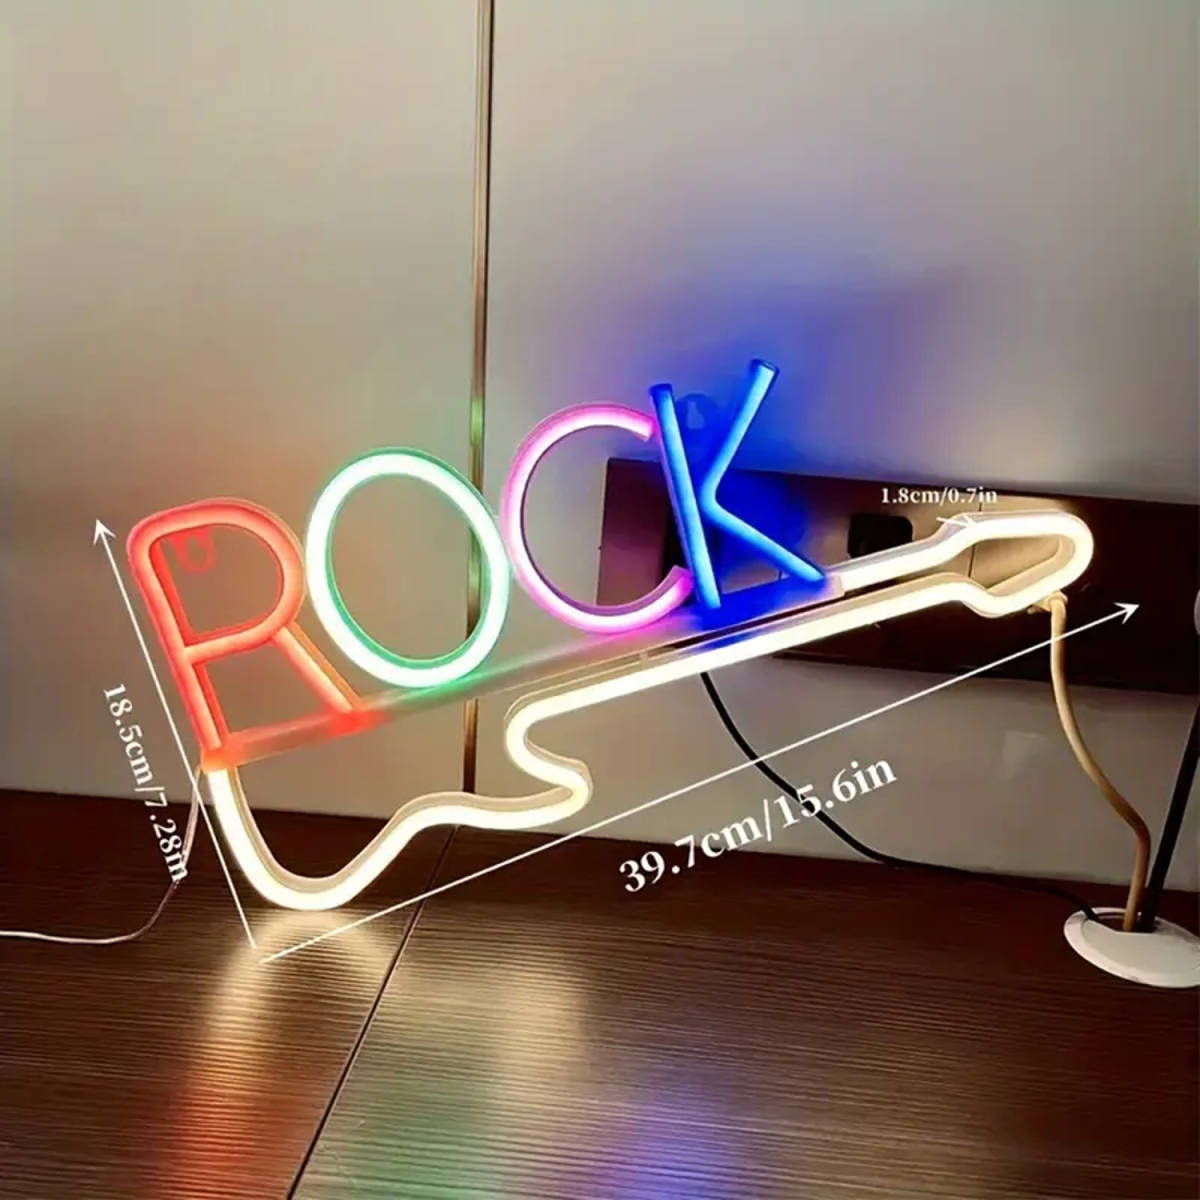  neon автограф иллюминация LED табличка ro талон Rolls ta- супер симпатичный!! american стиль присутствие выдающийся! красочный модный интерьер атмосфера освещение 